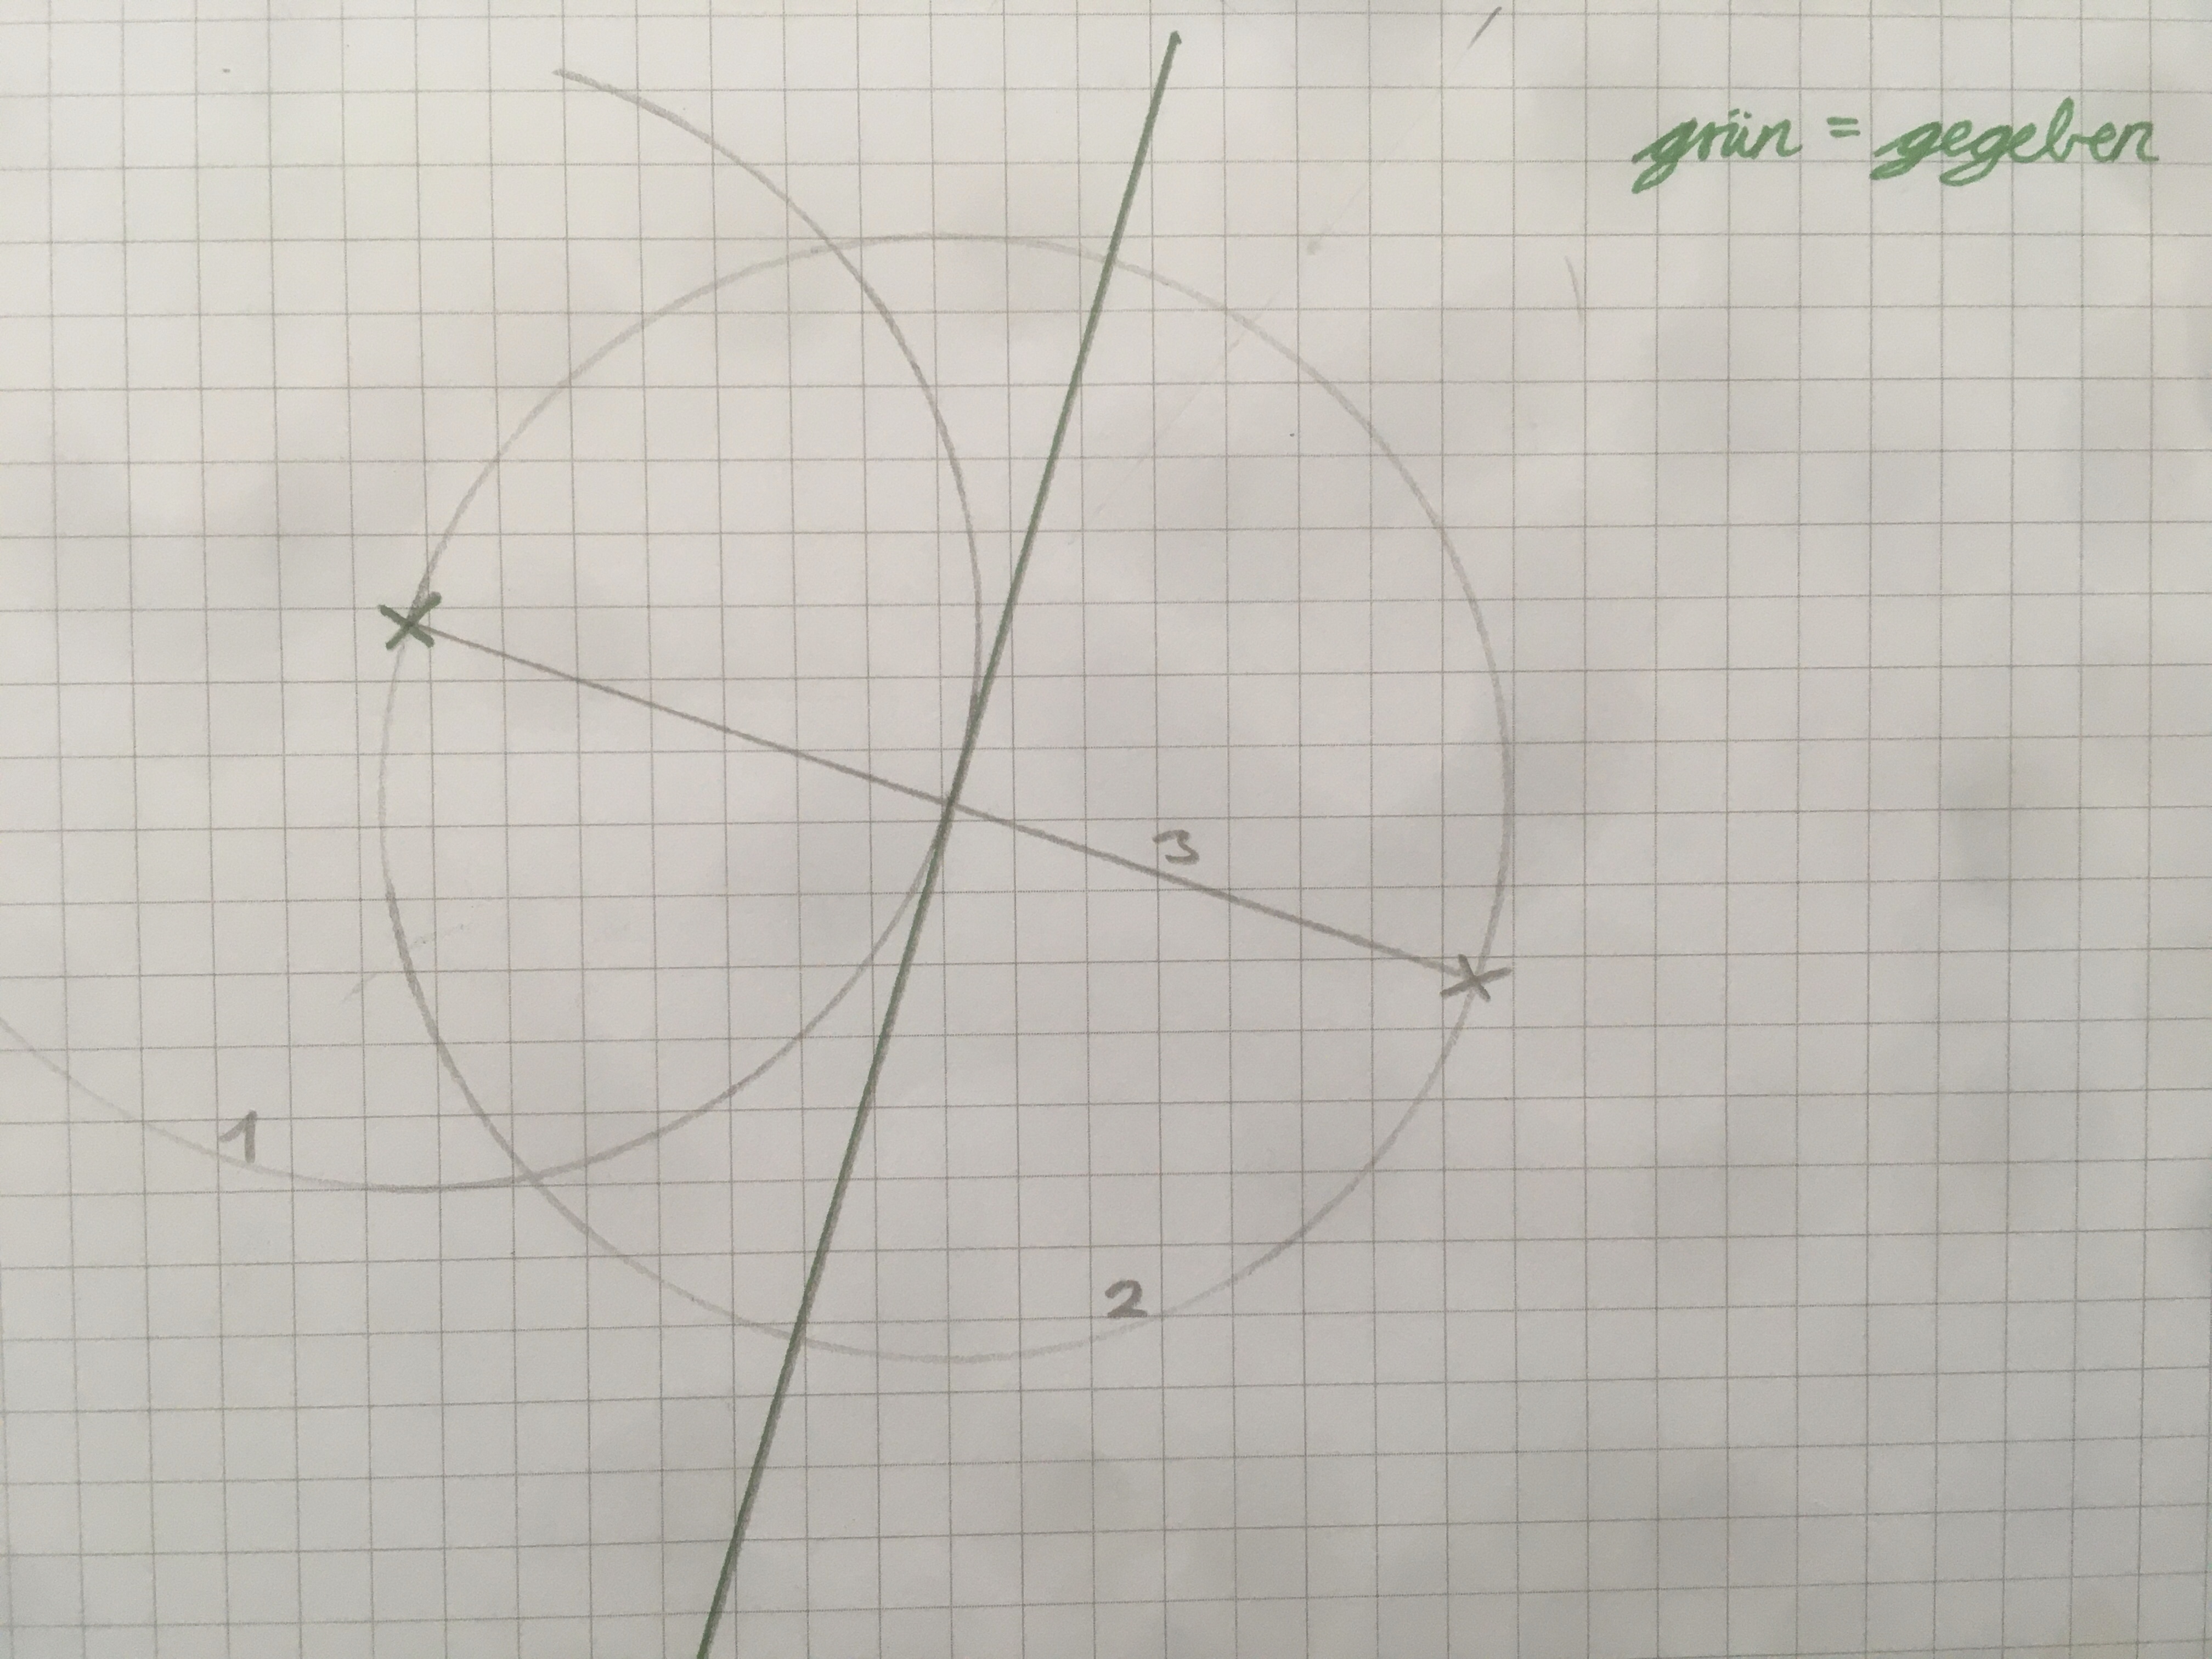 Konstruktion Geradenspiegelung mit Zirkel und Lineal (ohne Geodreieck).jpg